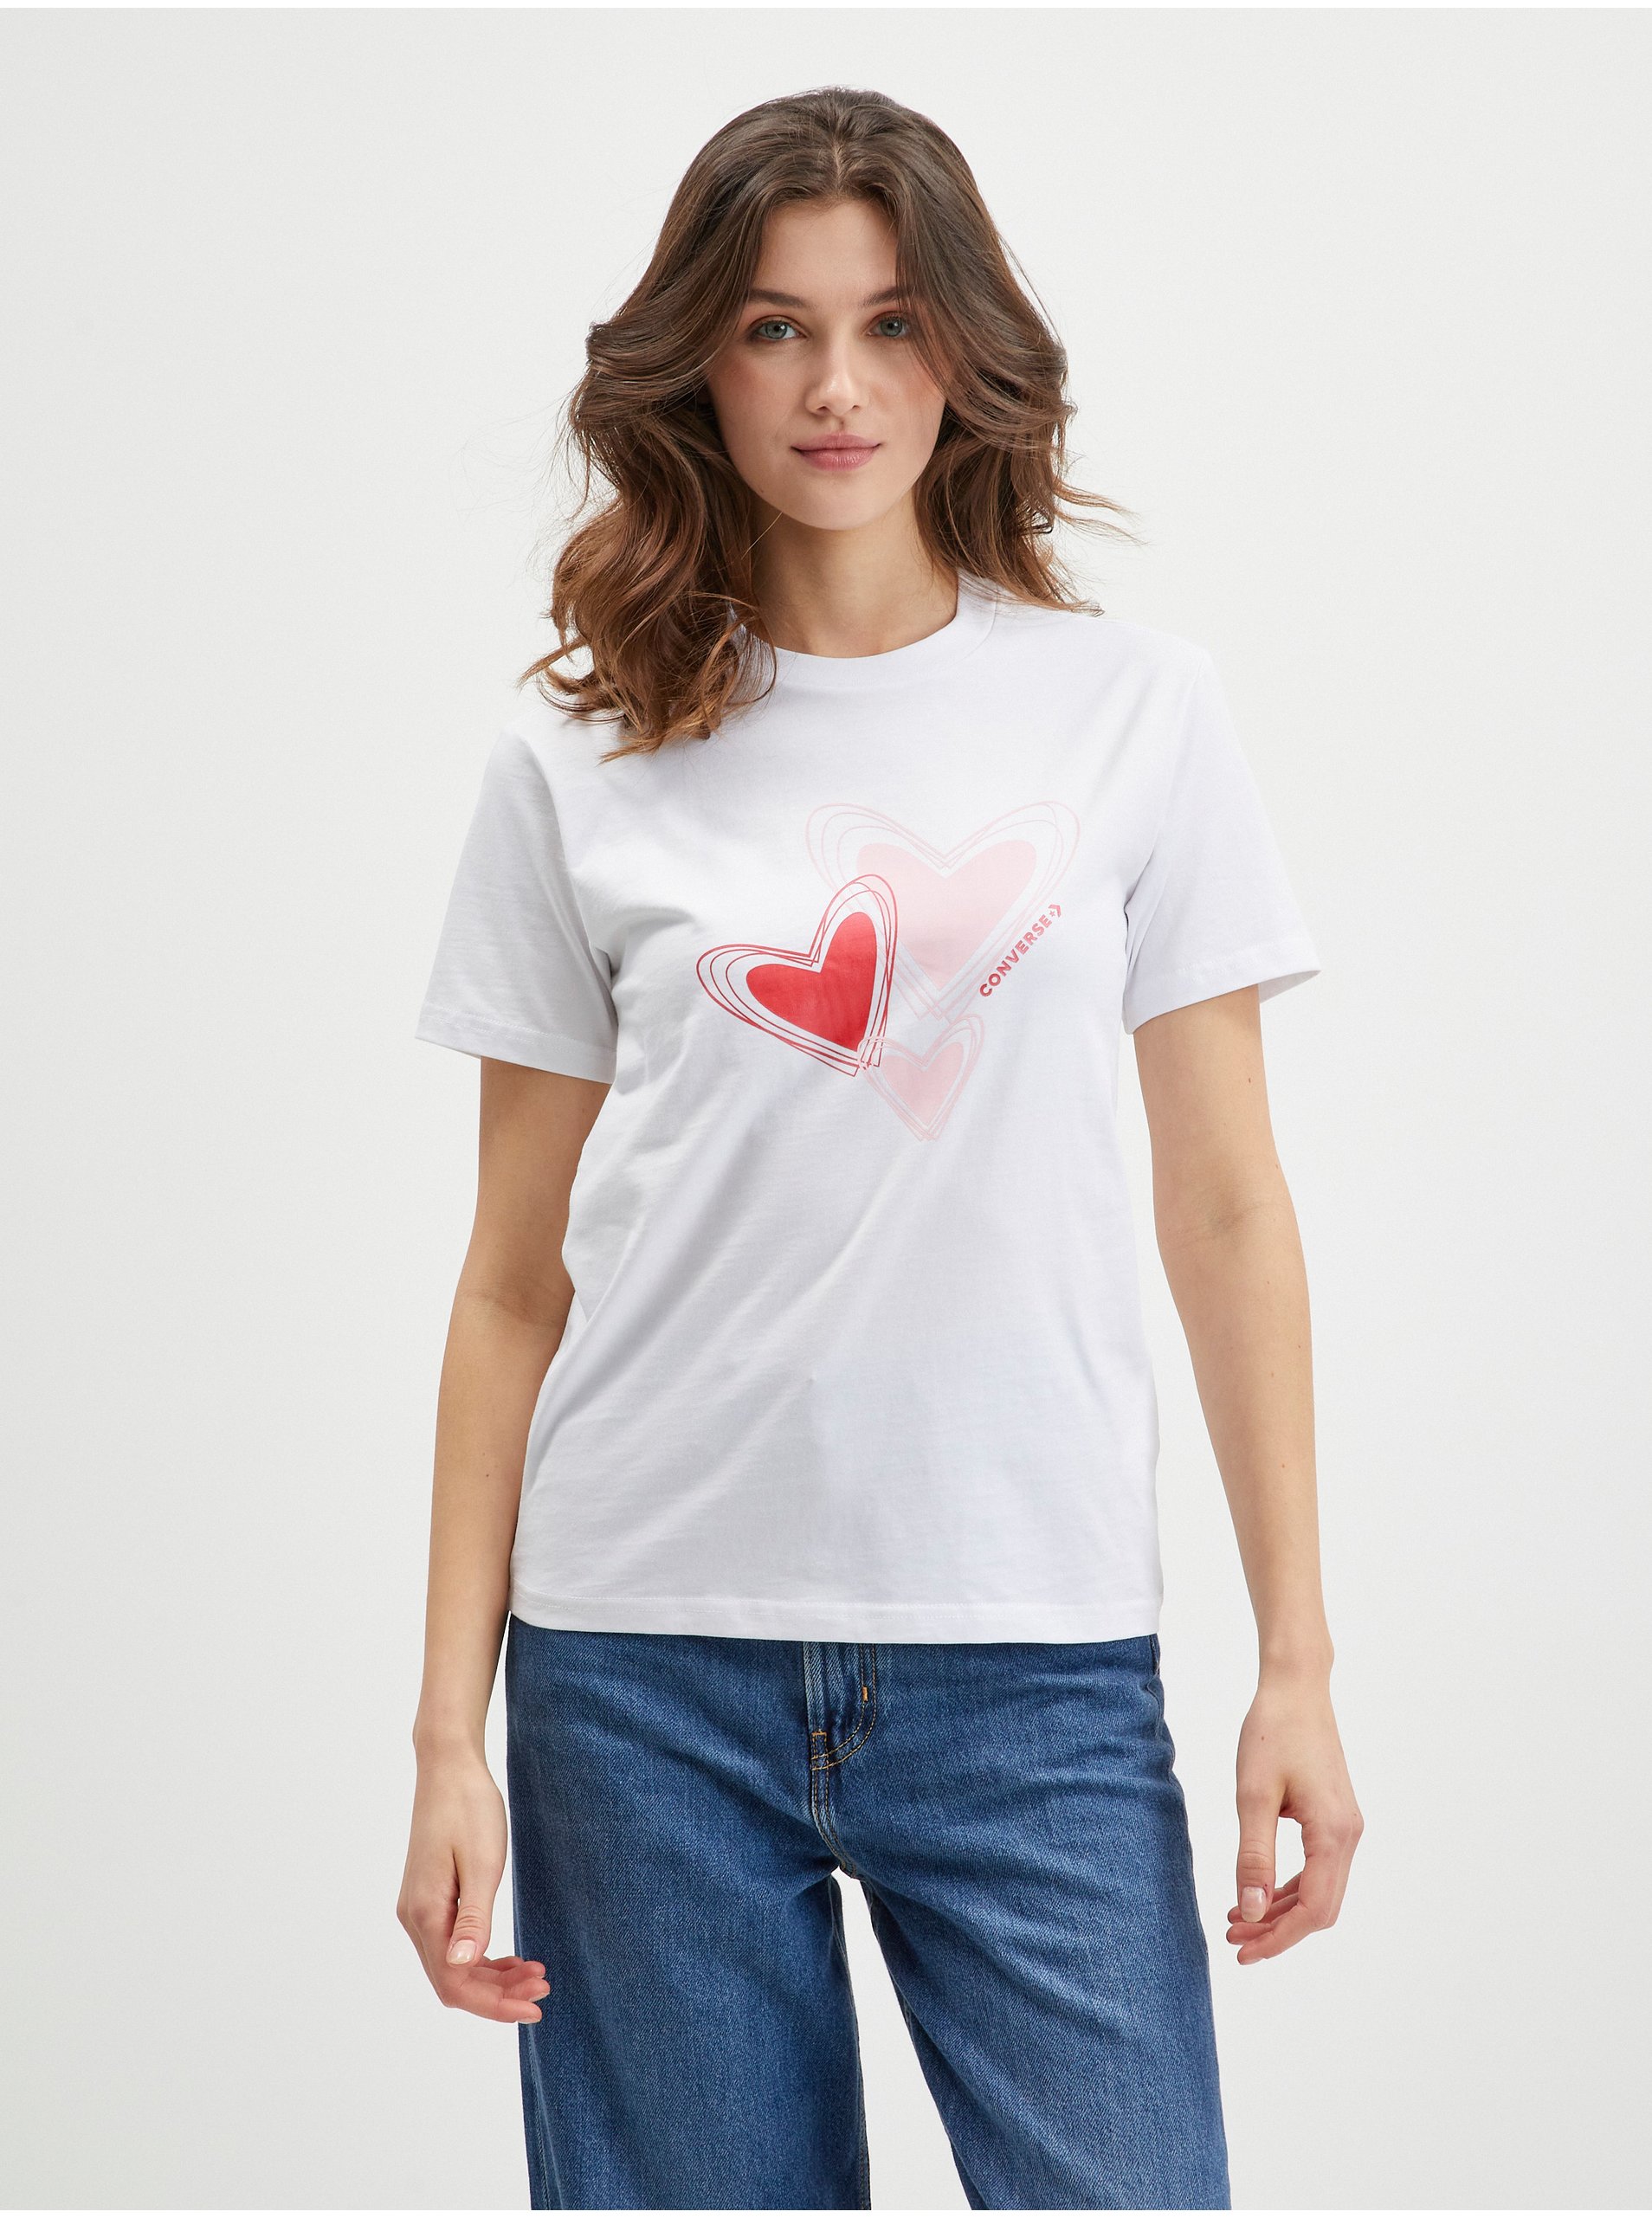 White Women's T-Shirt Converse - Women